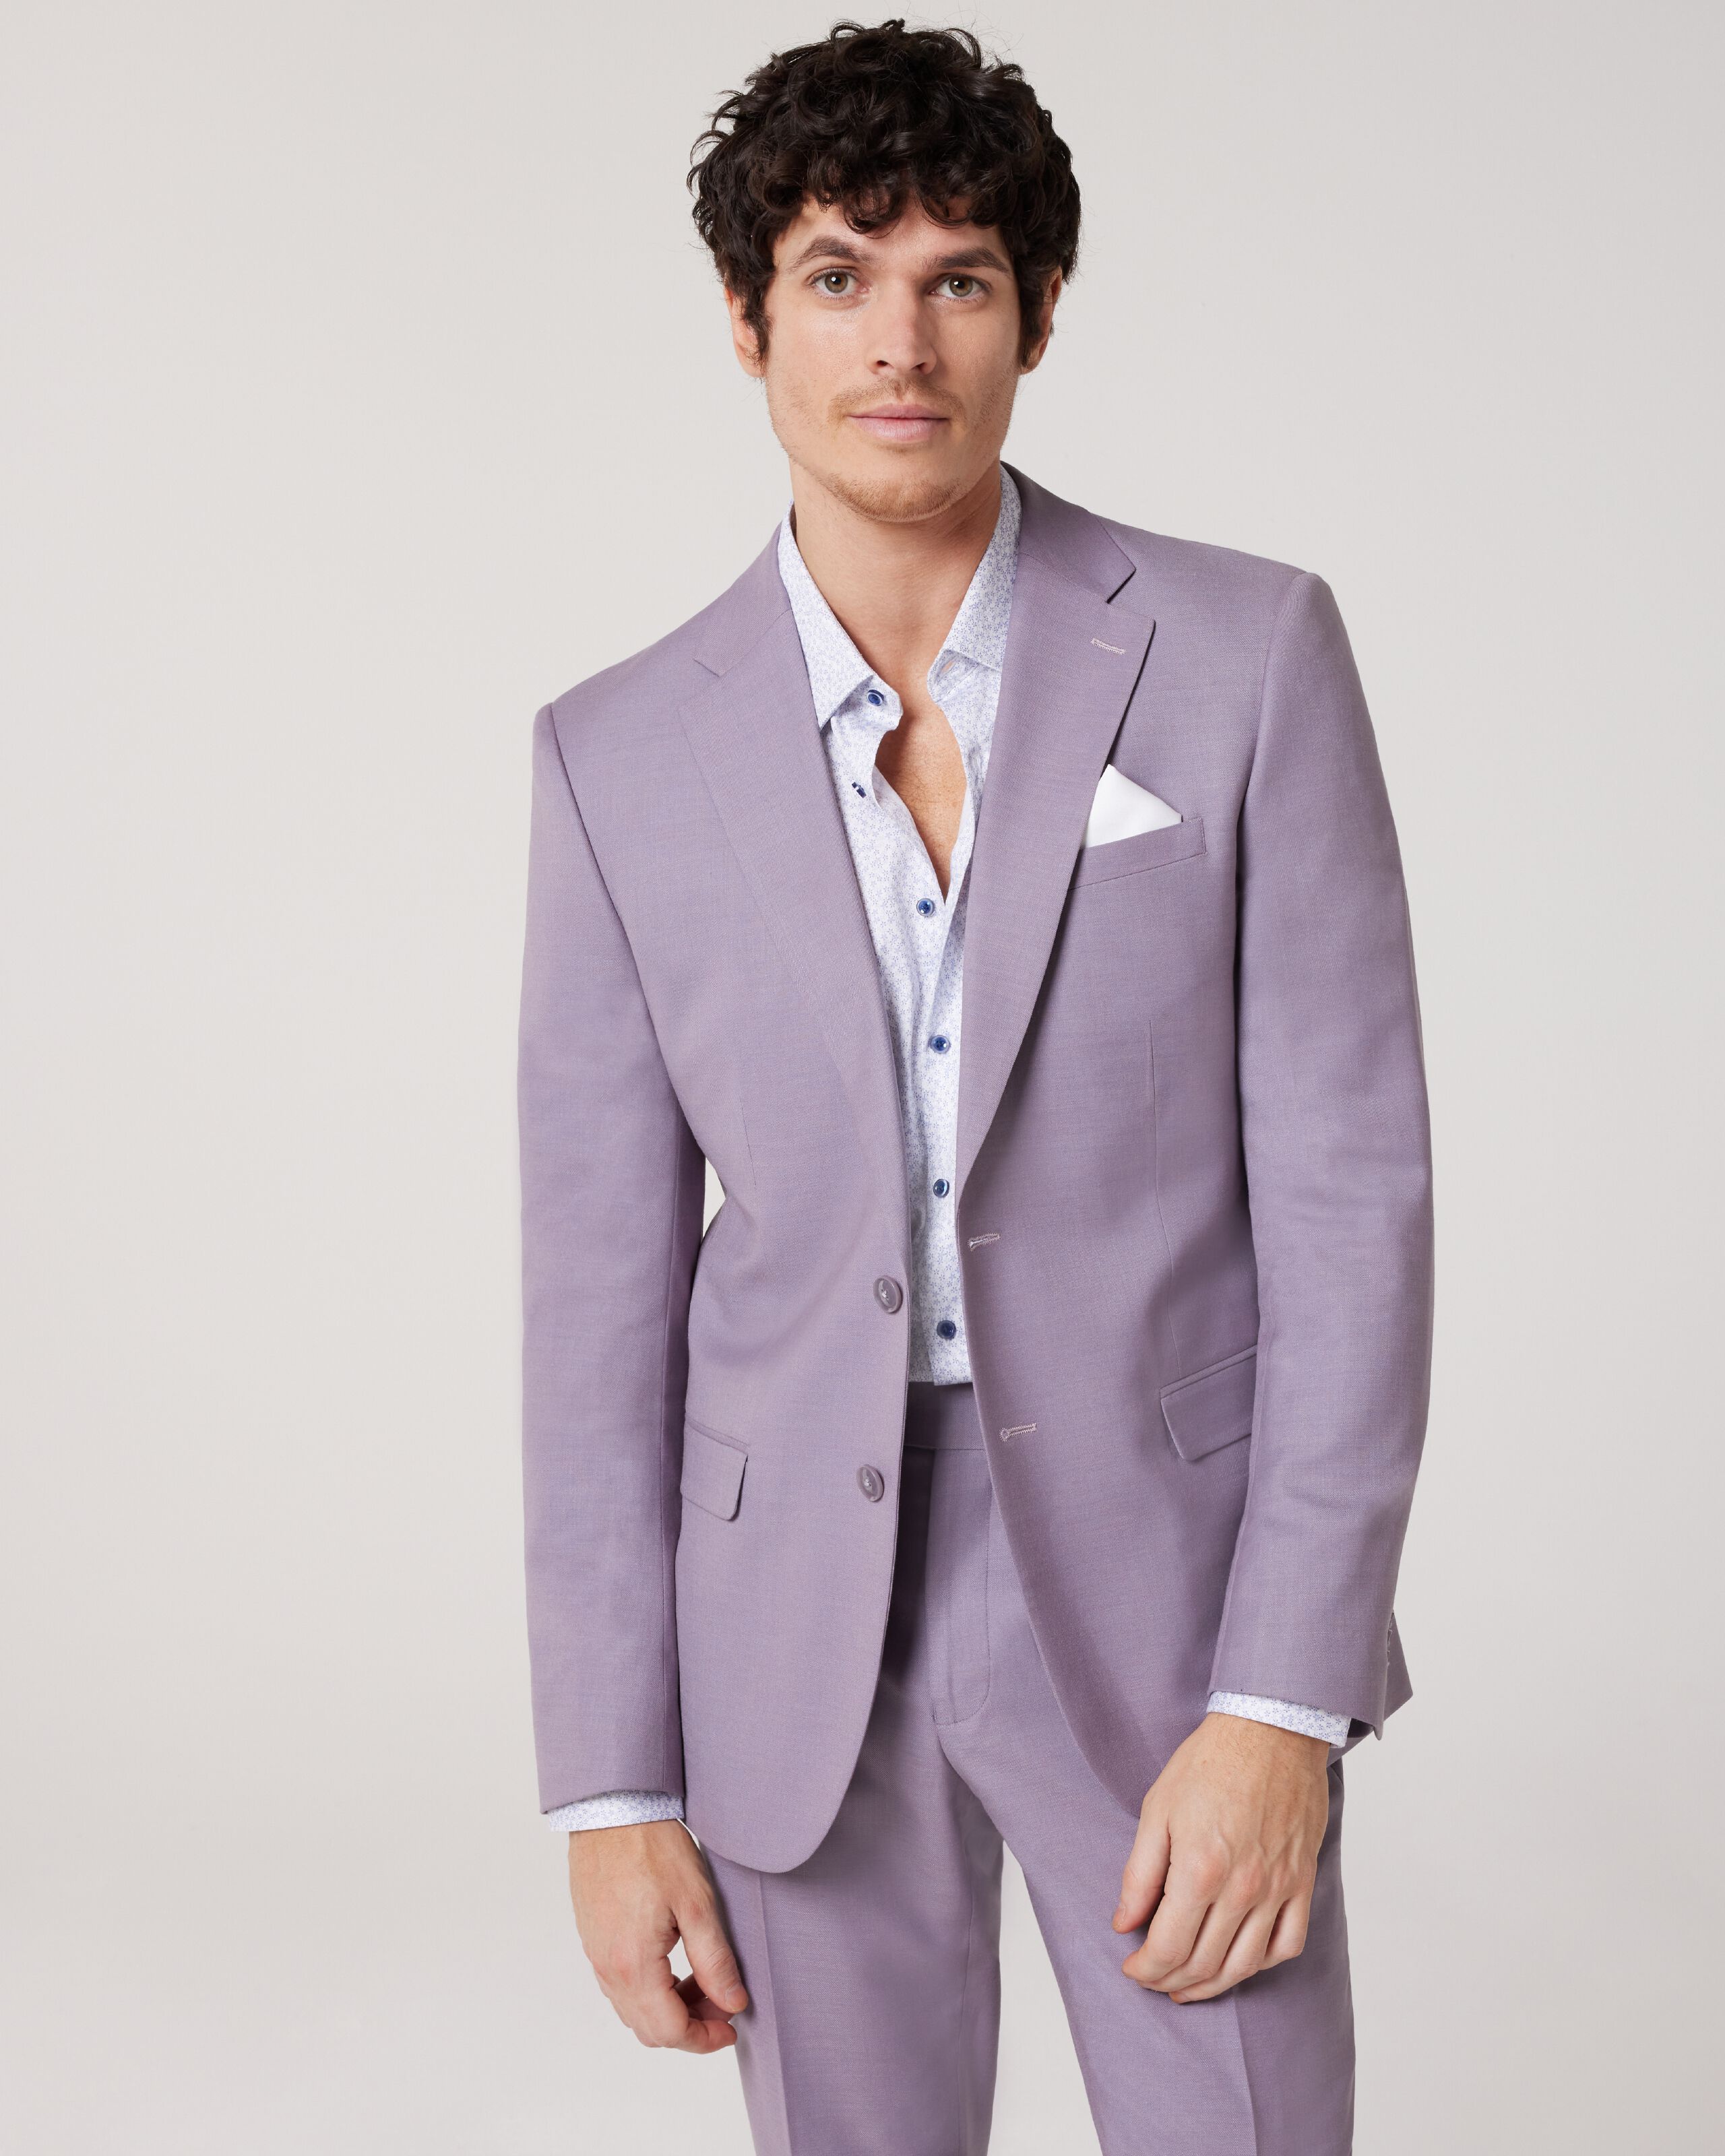 Women's Blazer Buttoned Suit - Lilac - Wholesale Womens Clothing Vendors  For Boutiques